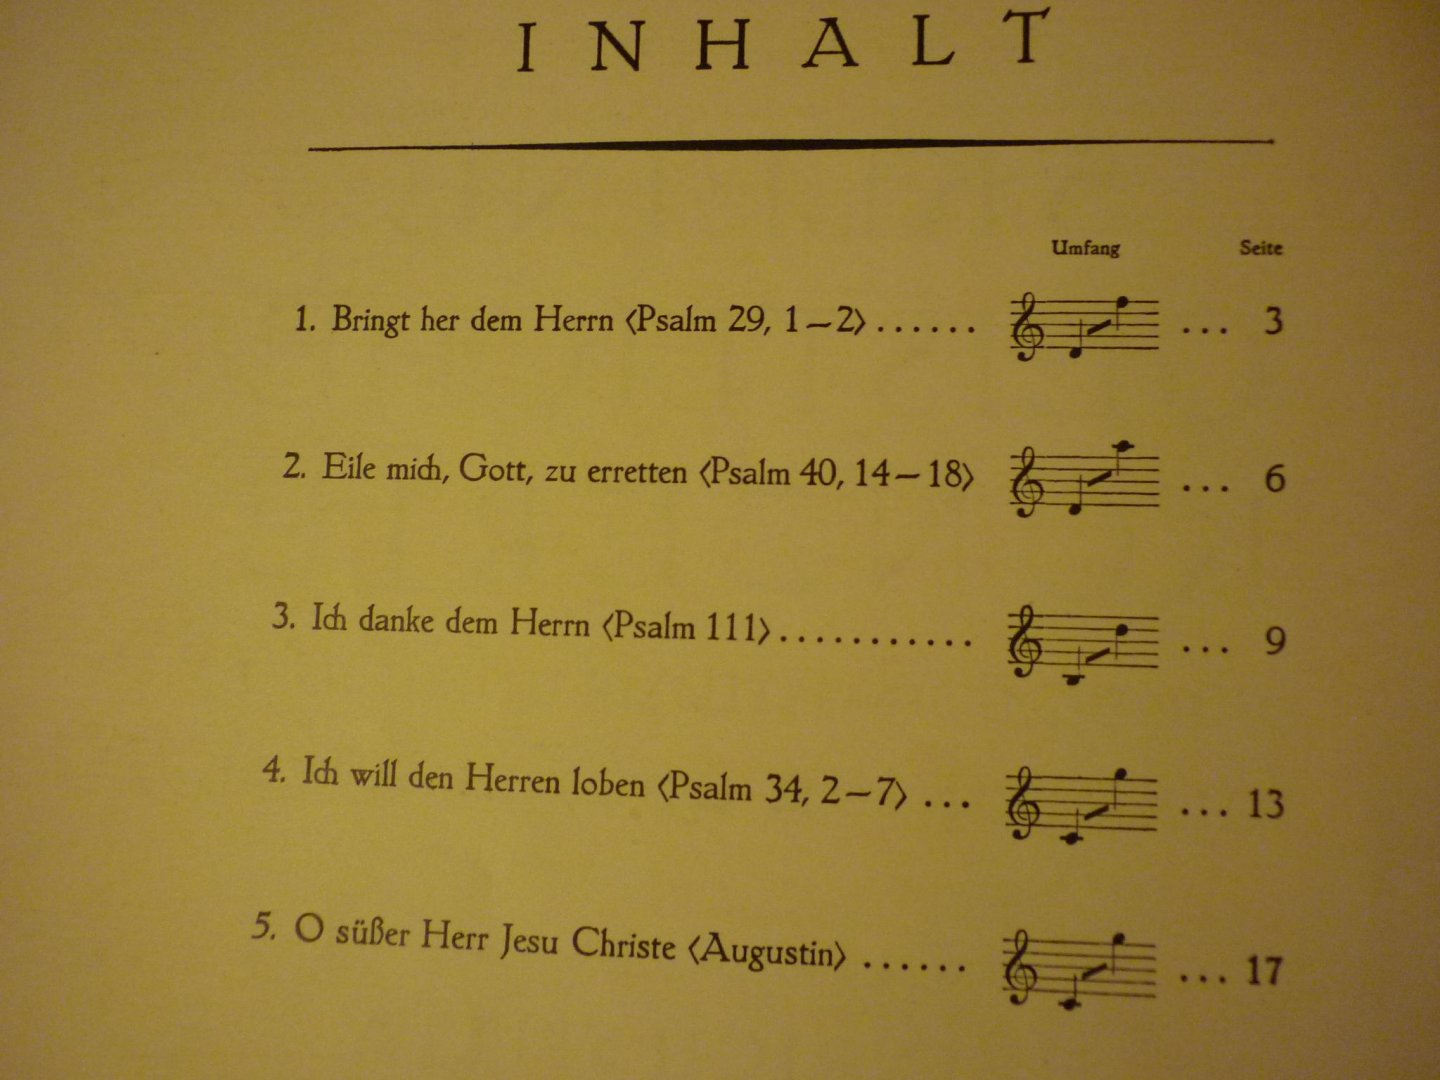 Schutz; Heinrich - 5 Kleine Geistliche Konzerte (Heinrich Spitta)